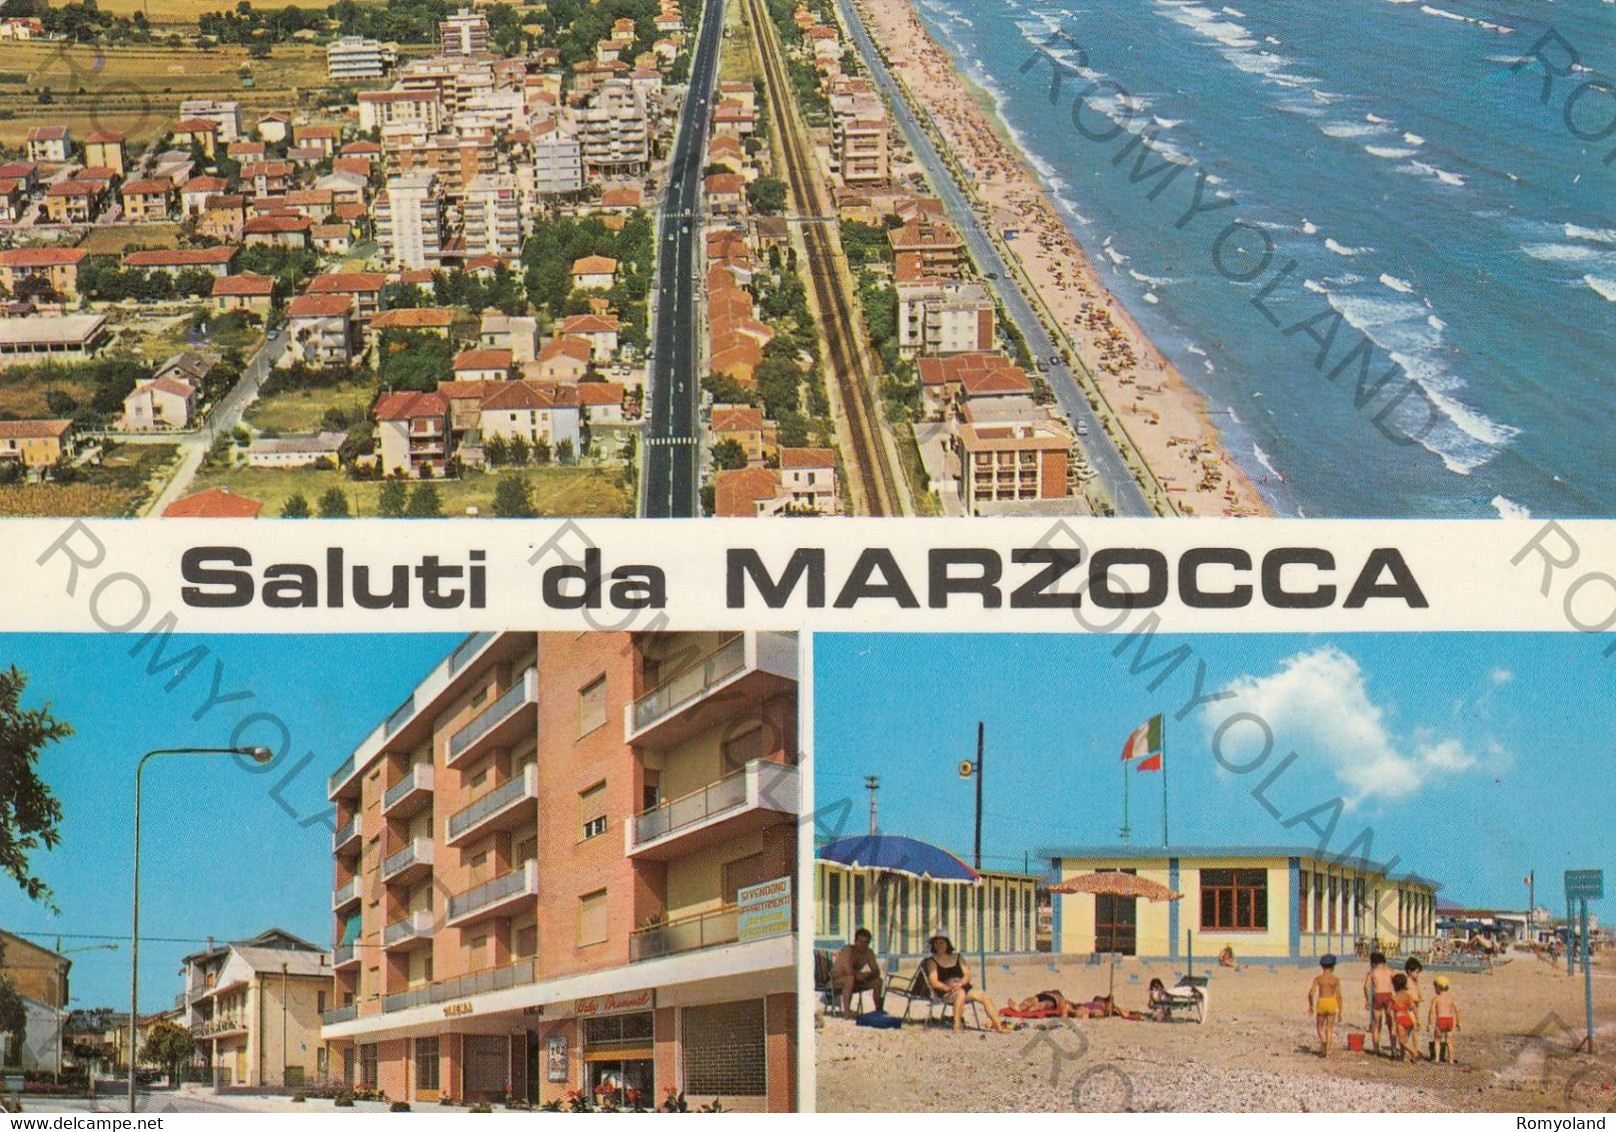 CARTOLINA  SALUTI DA MARZOCCA,ANCONA.MARCHE,MARE,SOLE,ESTATE,BELLA ITALIA,STORIA,MEMORIA,CULTURA,VIAGGIATA 1980 - Ancona